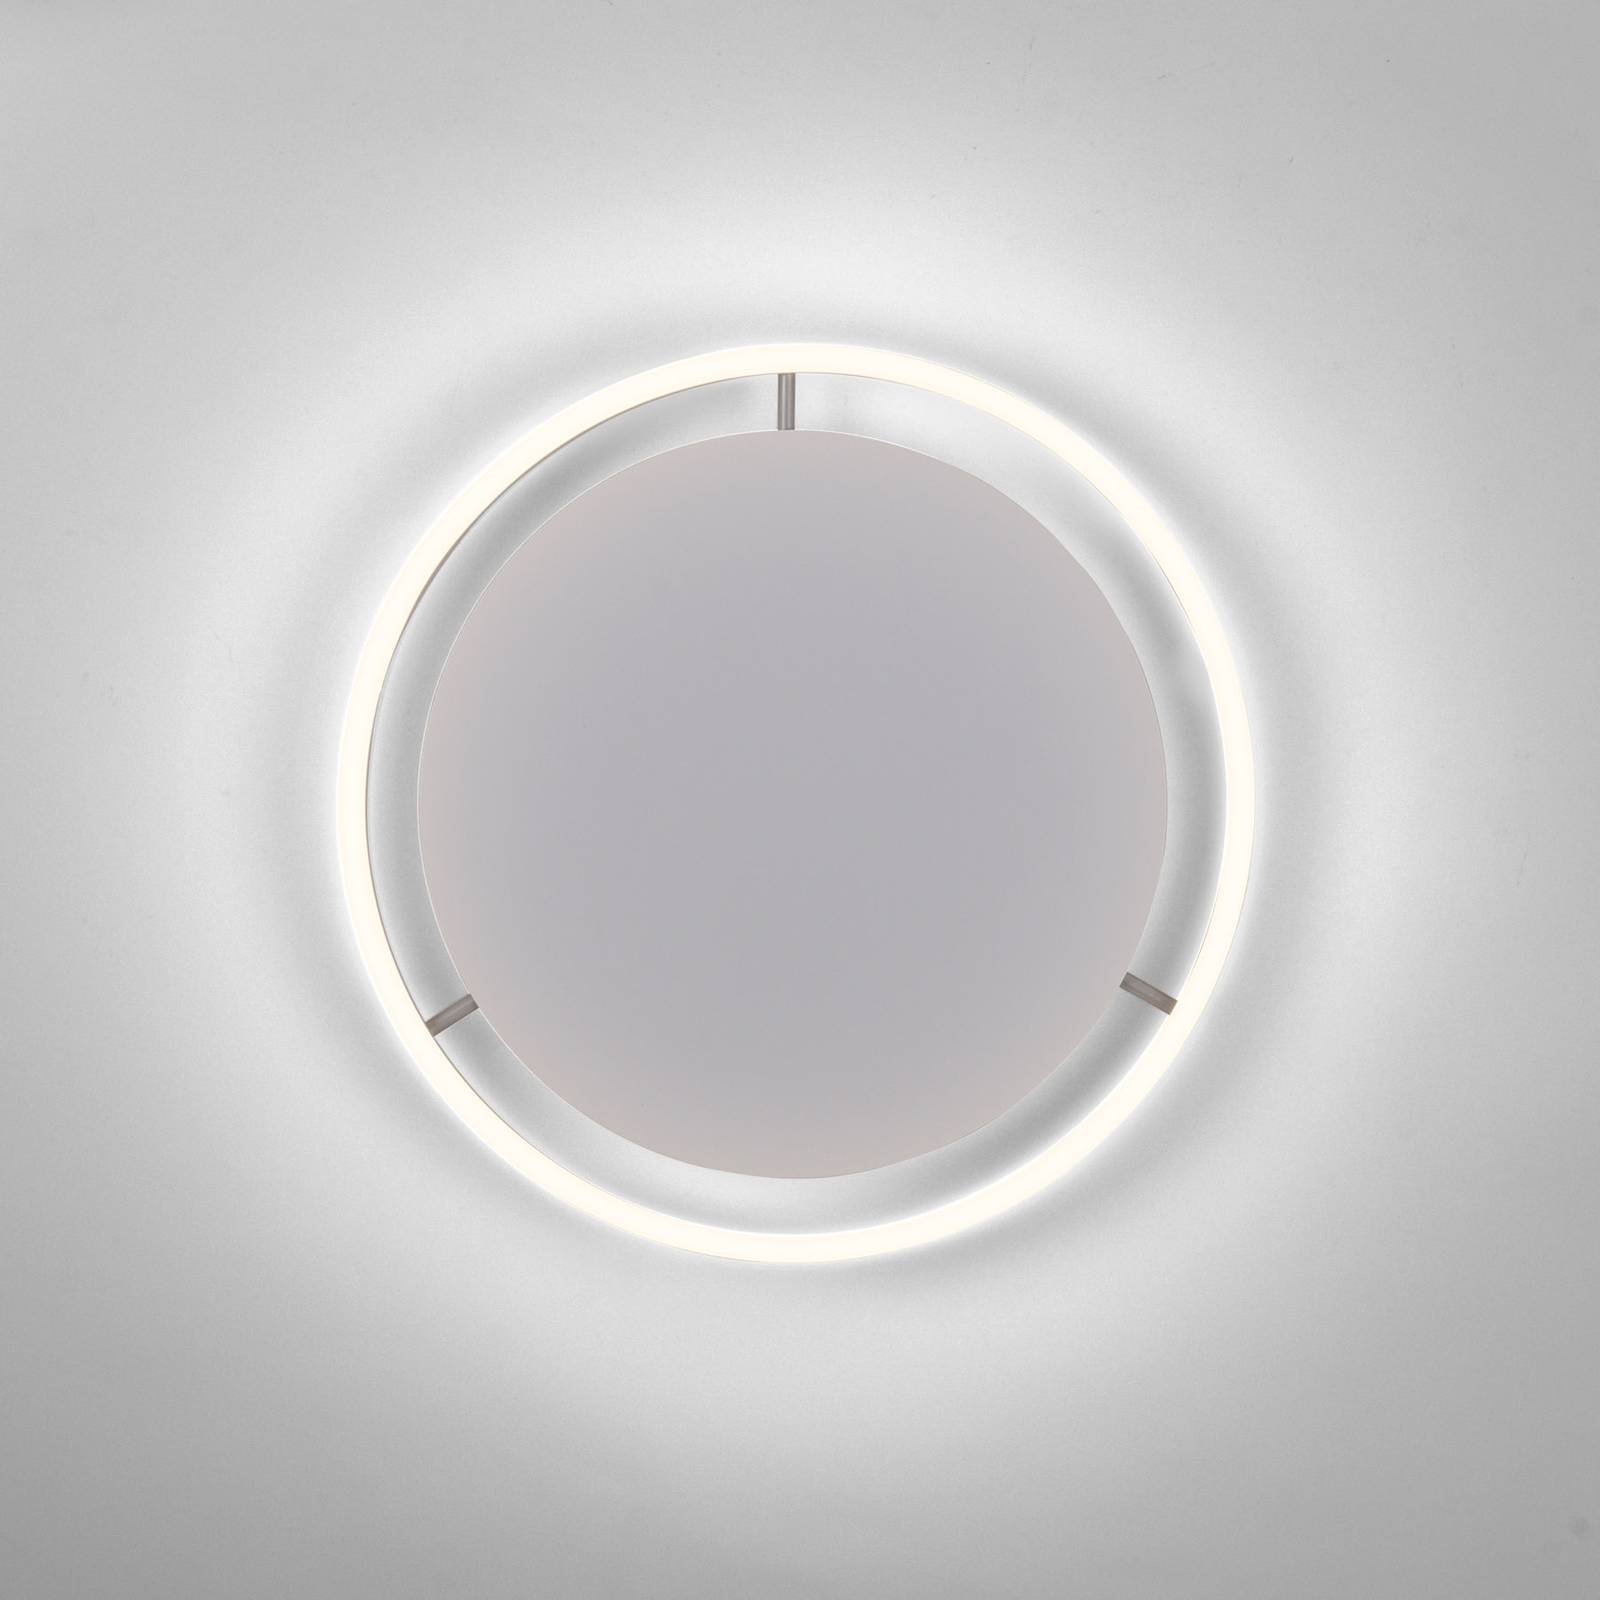  Just Light. Lampa Sufitowa Led Ritus, ø 39,3 Cm, Aluminium 